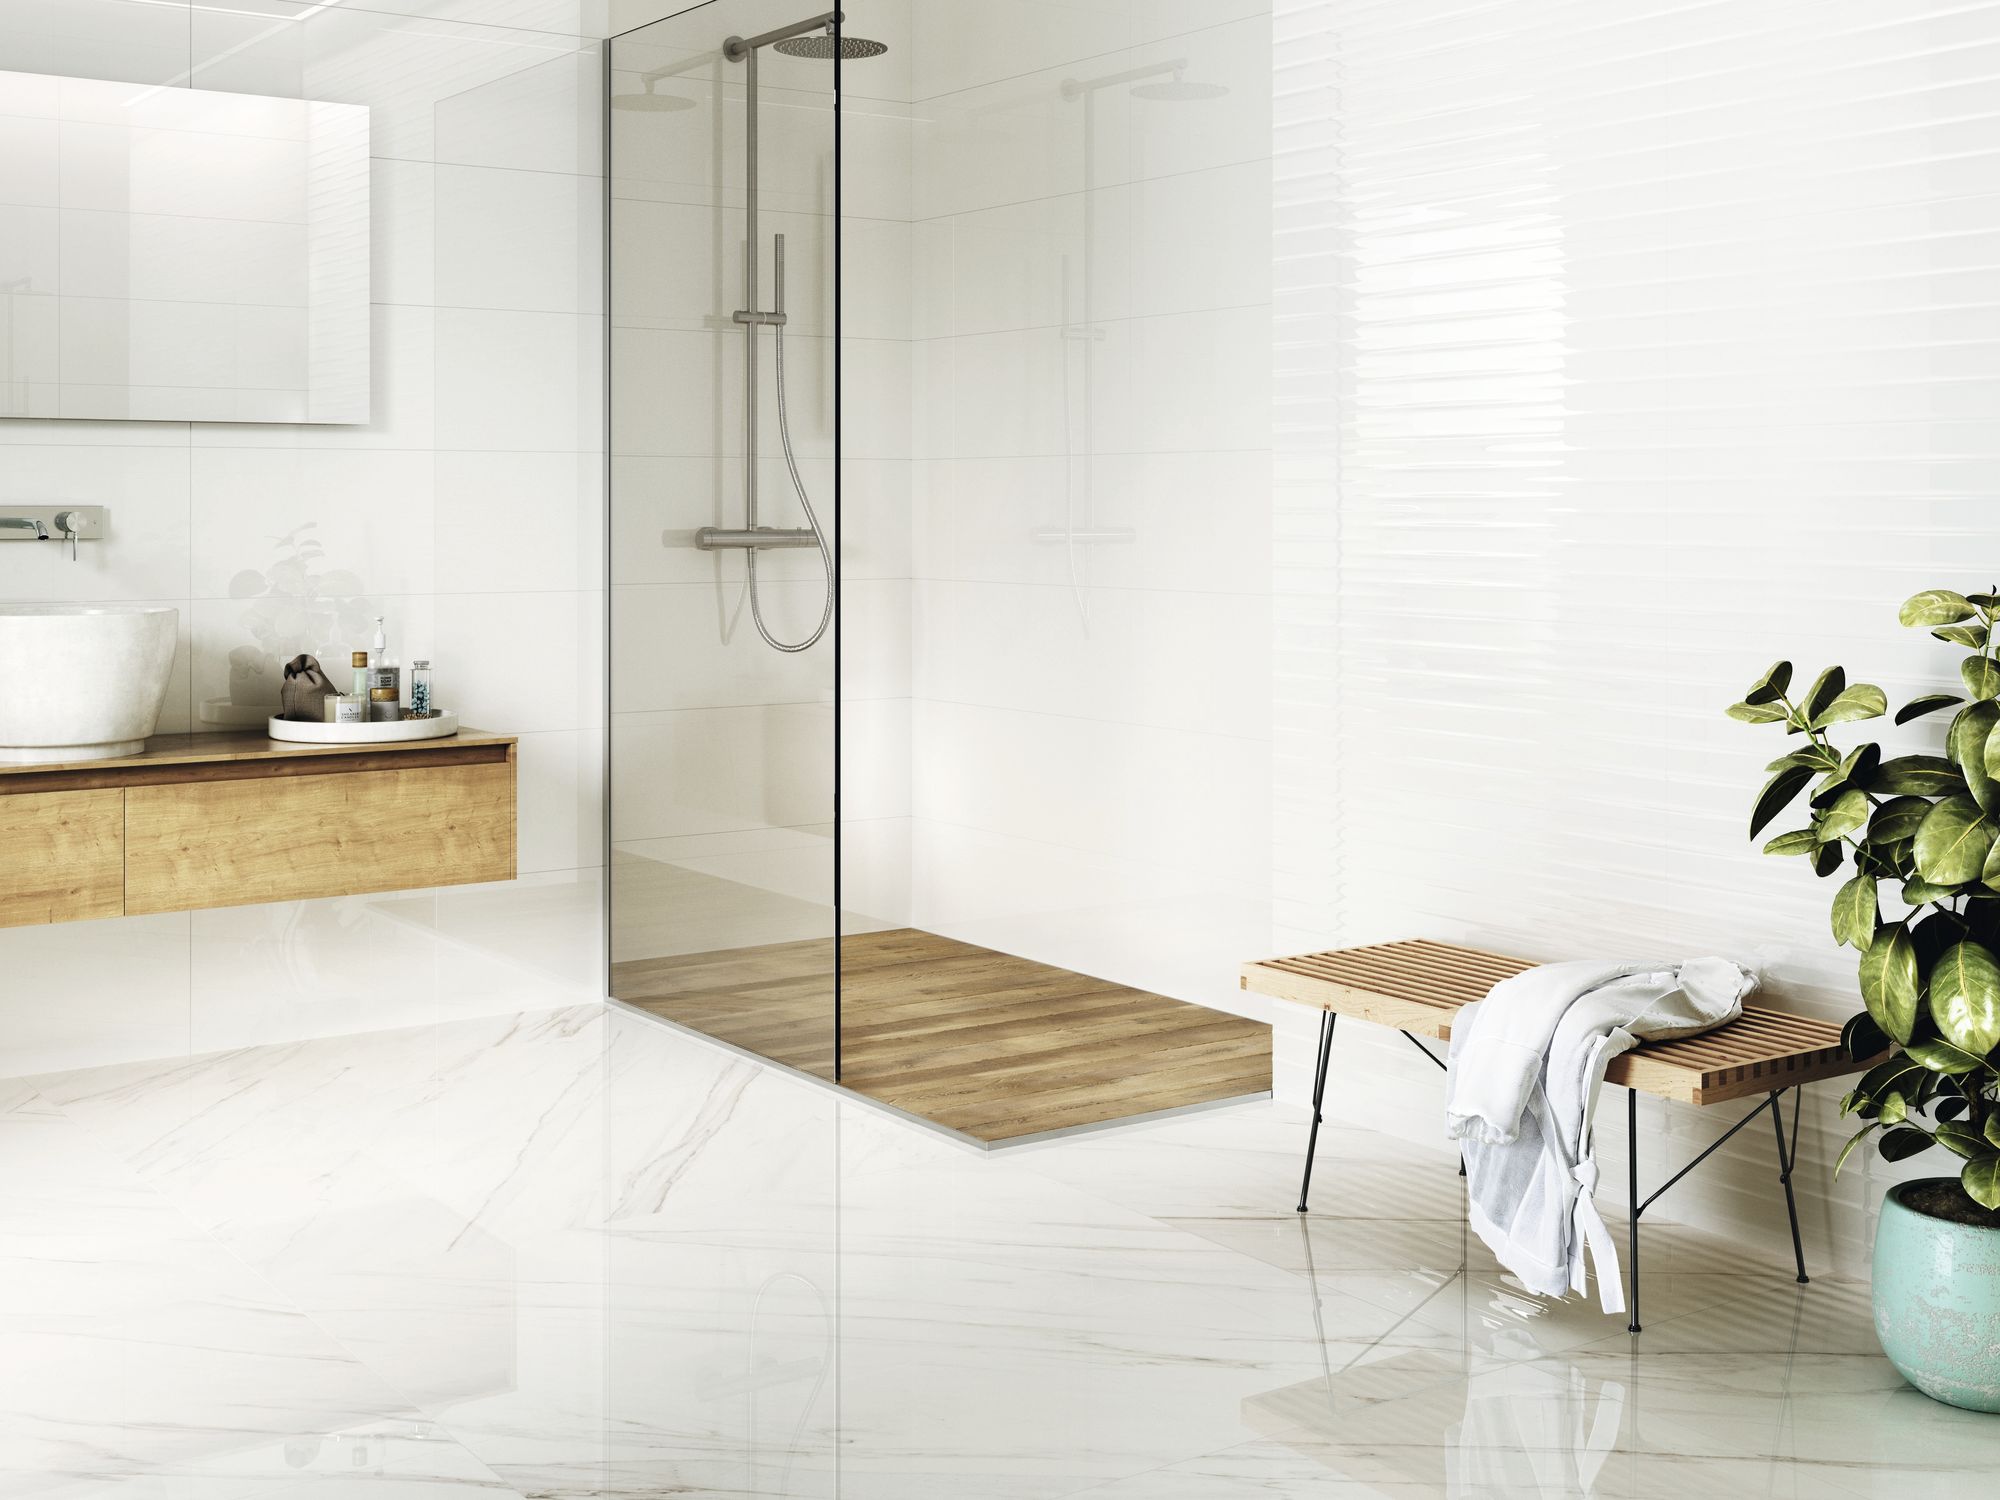 Jasna łazienka wyłożona białymi płytkami w połysku z kabiną prysznicową, drewnianą szafką wiszącą z dużą, białą umywlaką i prostokątnym lustrem, drewnianą ławeczką z białym szlafrokiem i dużym kwiatem w donicy